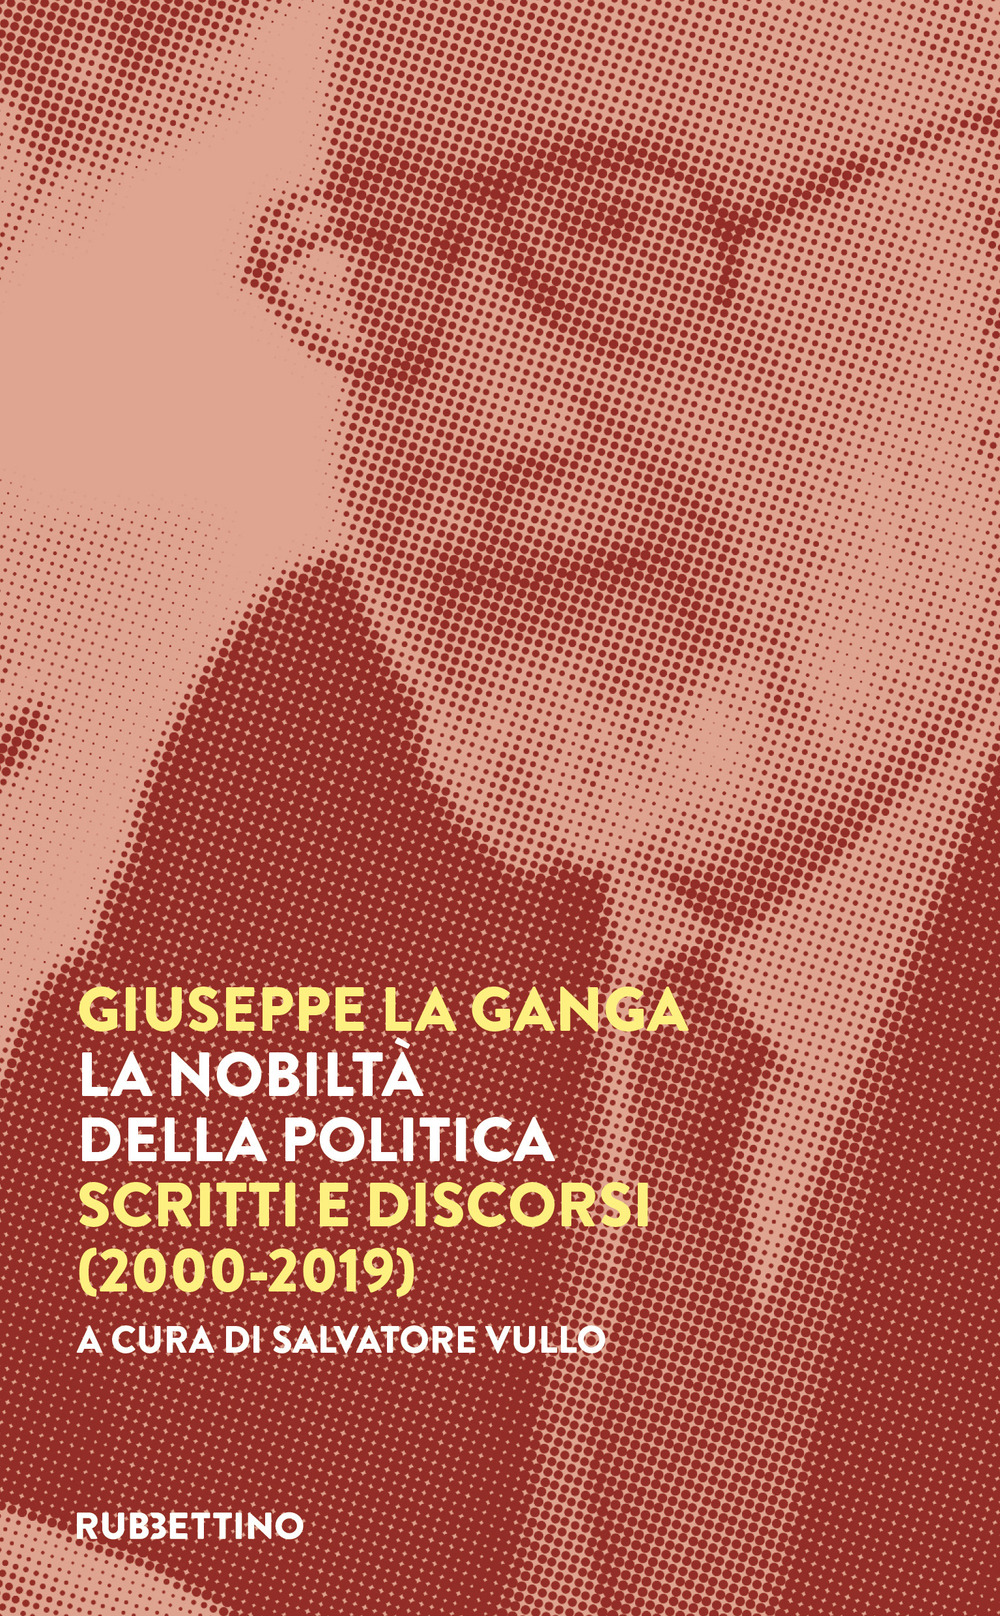 Libri La Ganga Giuseppe - La Nobilta Della Politica. Scritti E Discorsi (2000-2019) NUOVO SIGILLATO, EDIZIONE DEL 07/06/2022 SUBITO DISPONIBILE